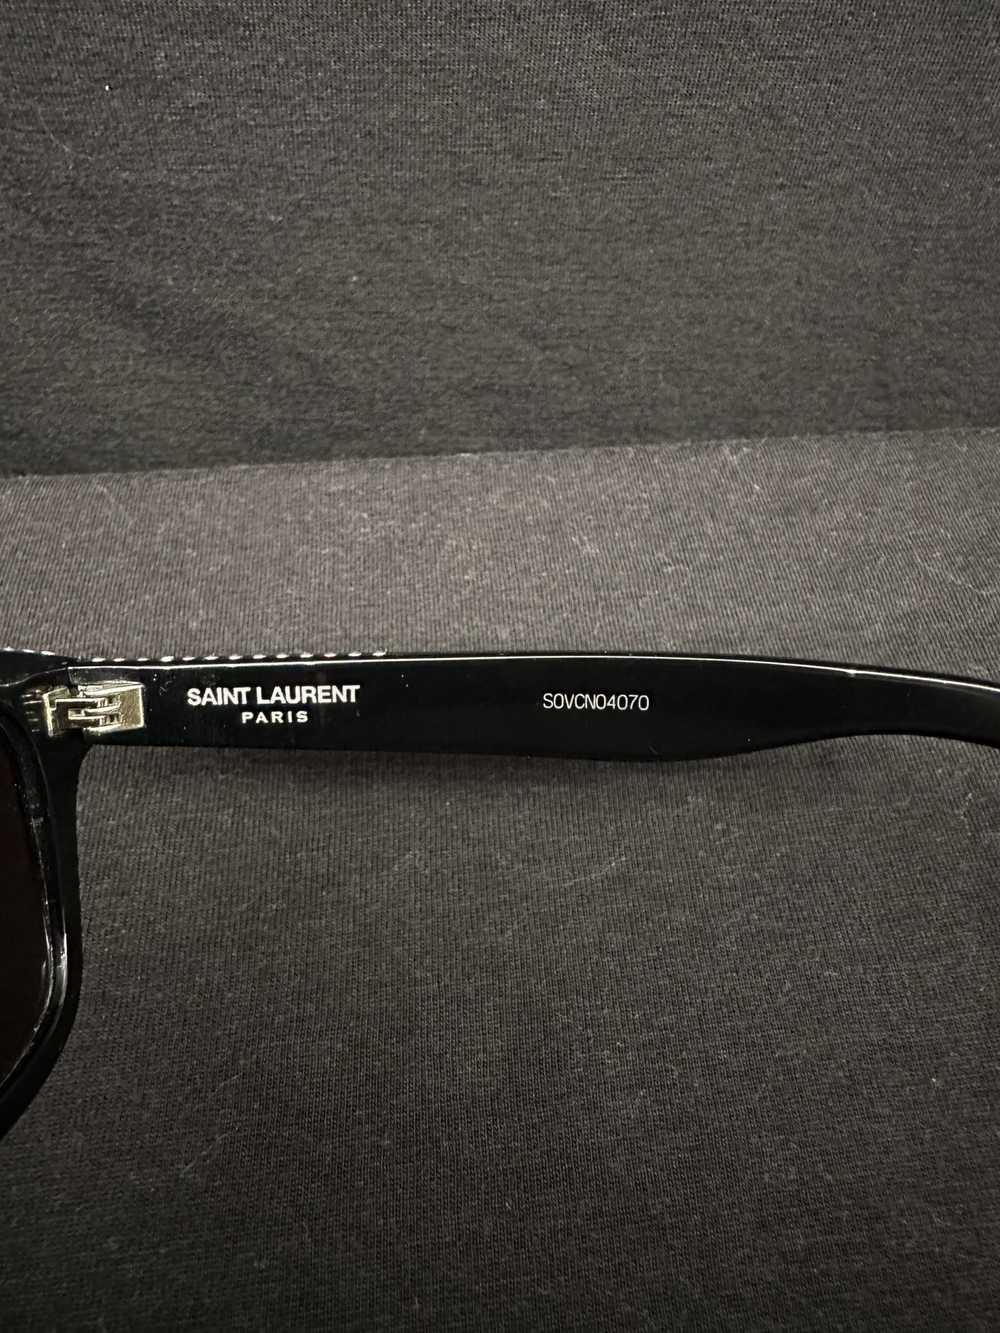 Yves Saint Laurent Saint Laurent Sunglasses SL 51… - image 4